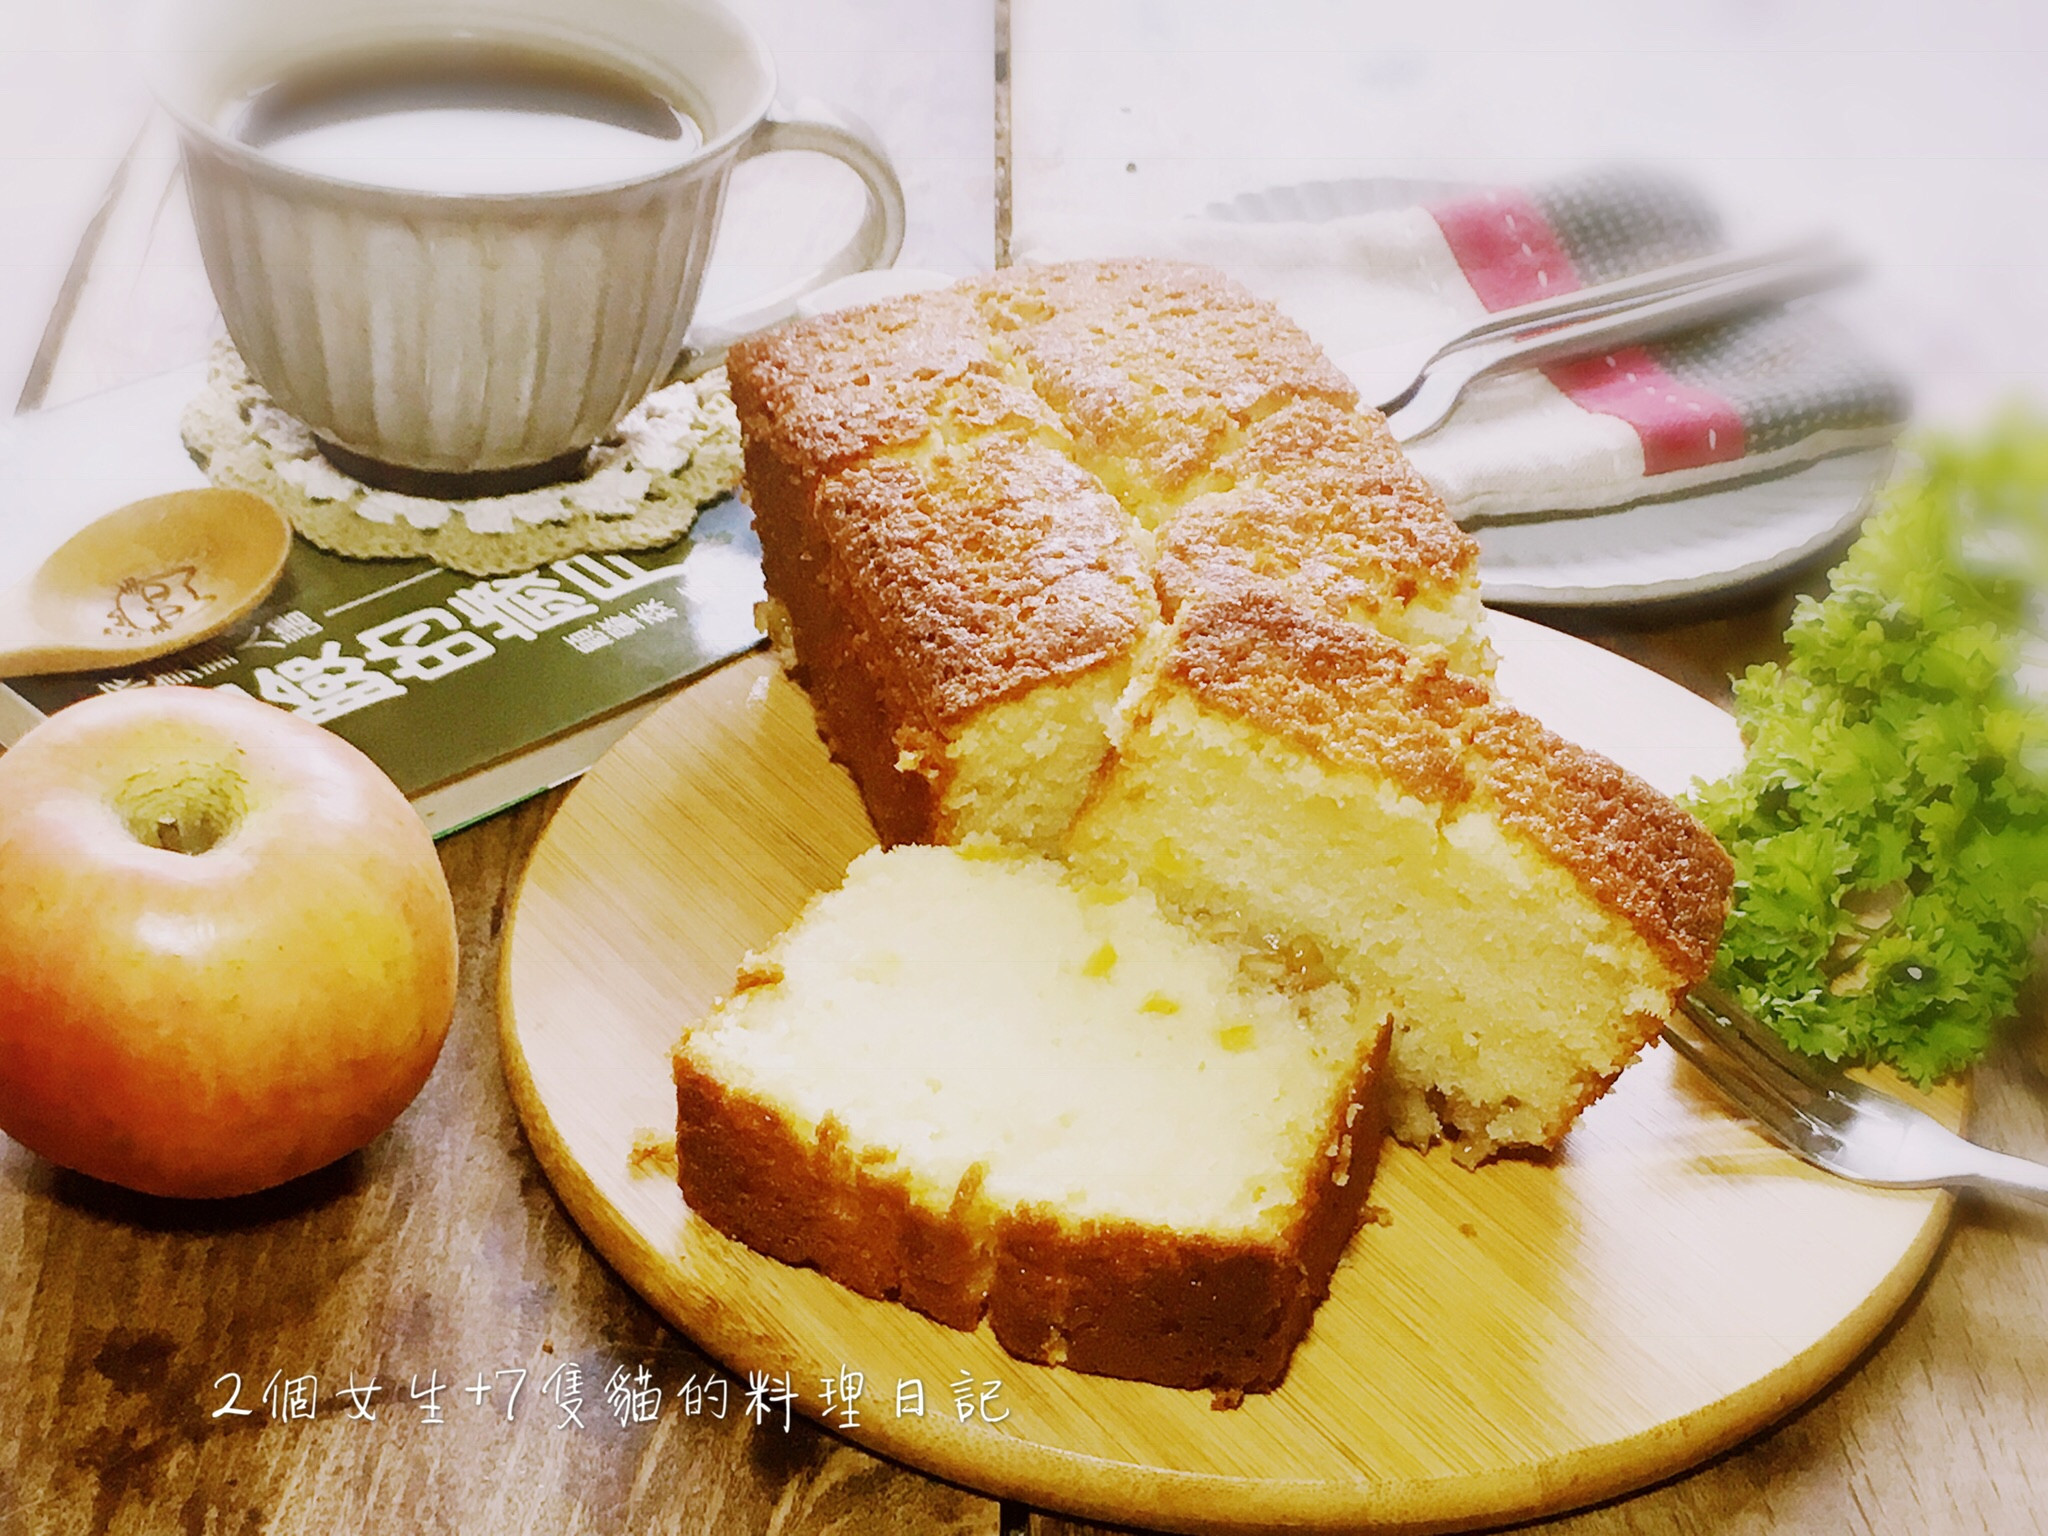 金砖蜂蜜起司蛋糕怎么做_金砖蜂蜜起司蛋糕的做法_米苏0810_豆果美食